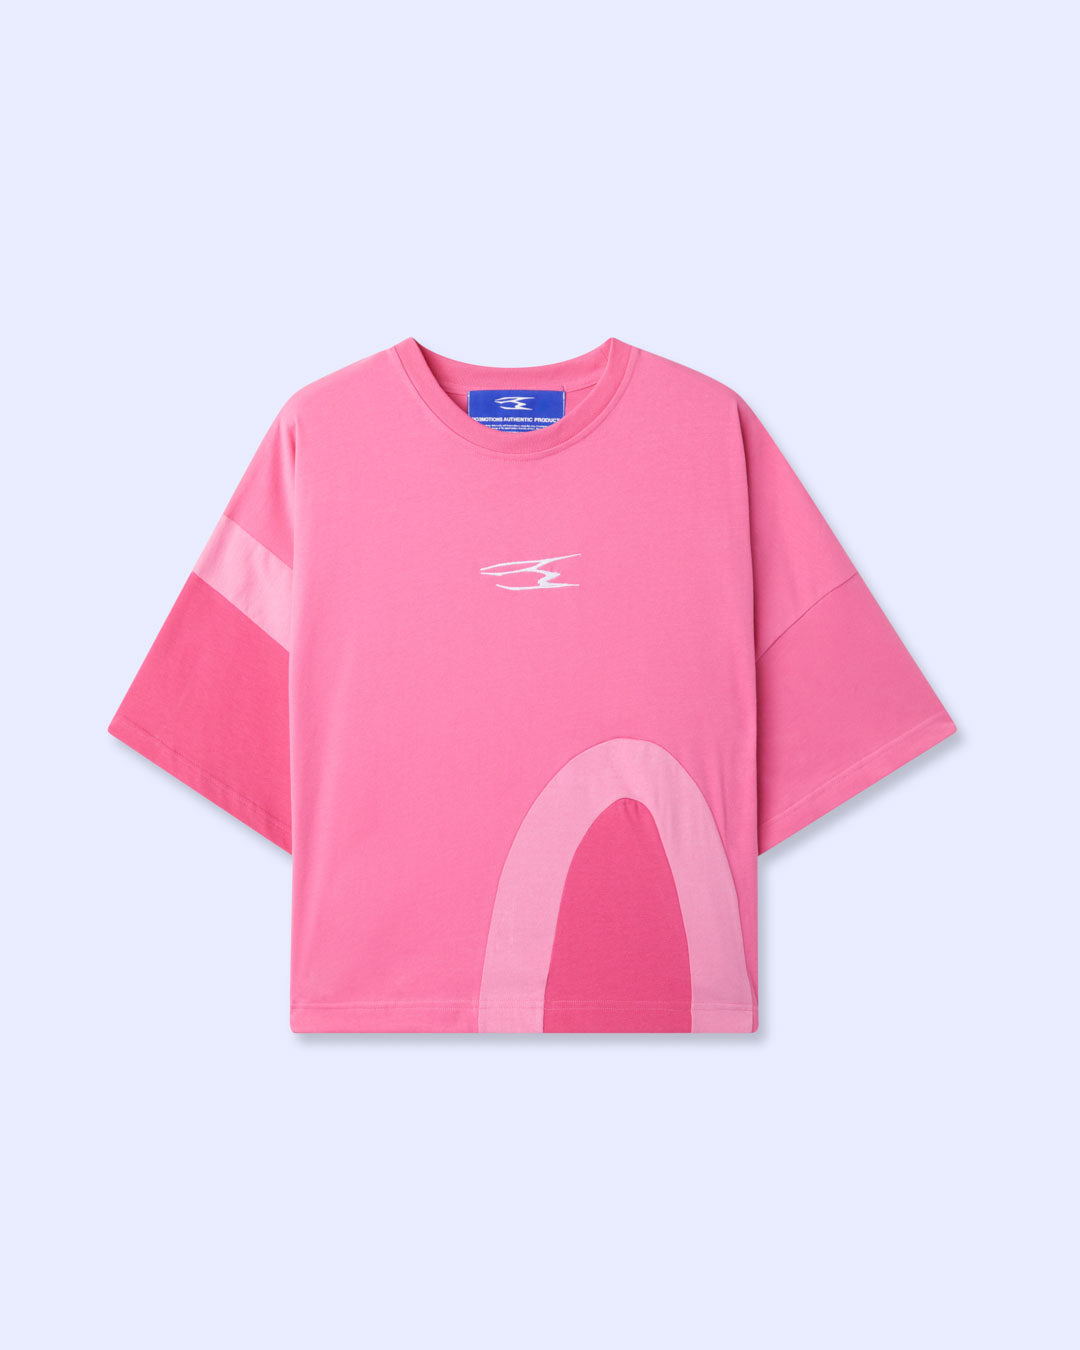 PROTOTYPƎ II (Pink)